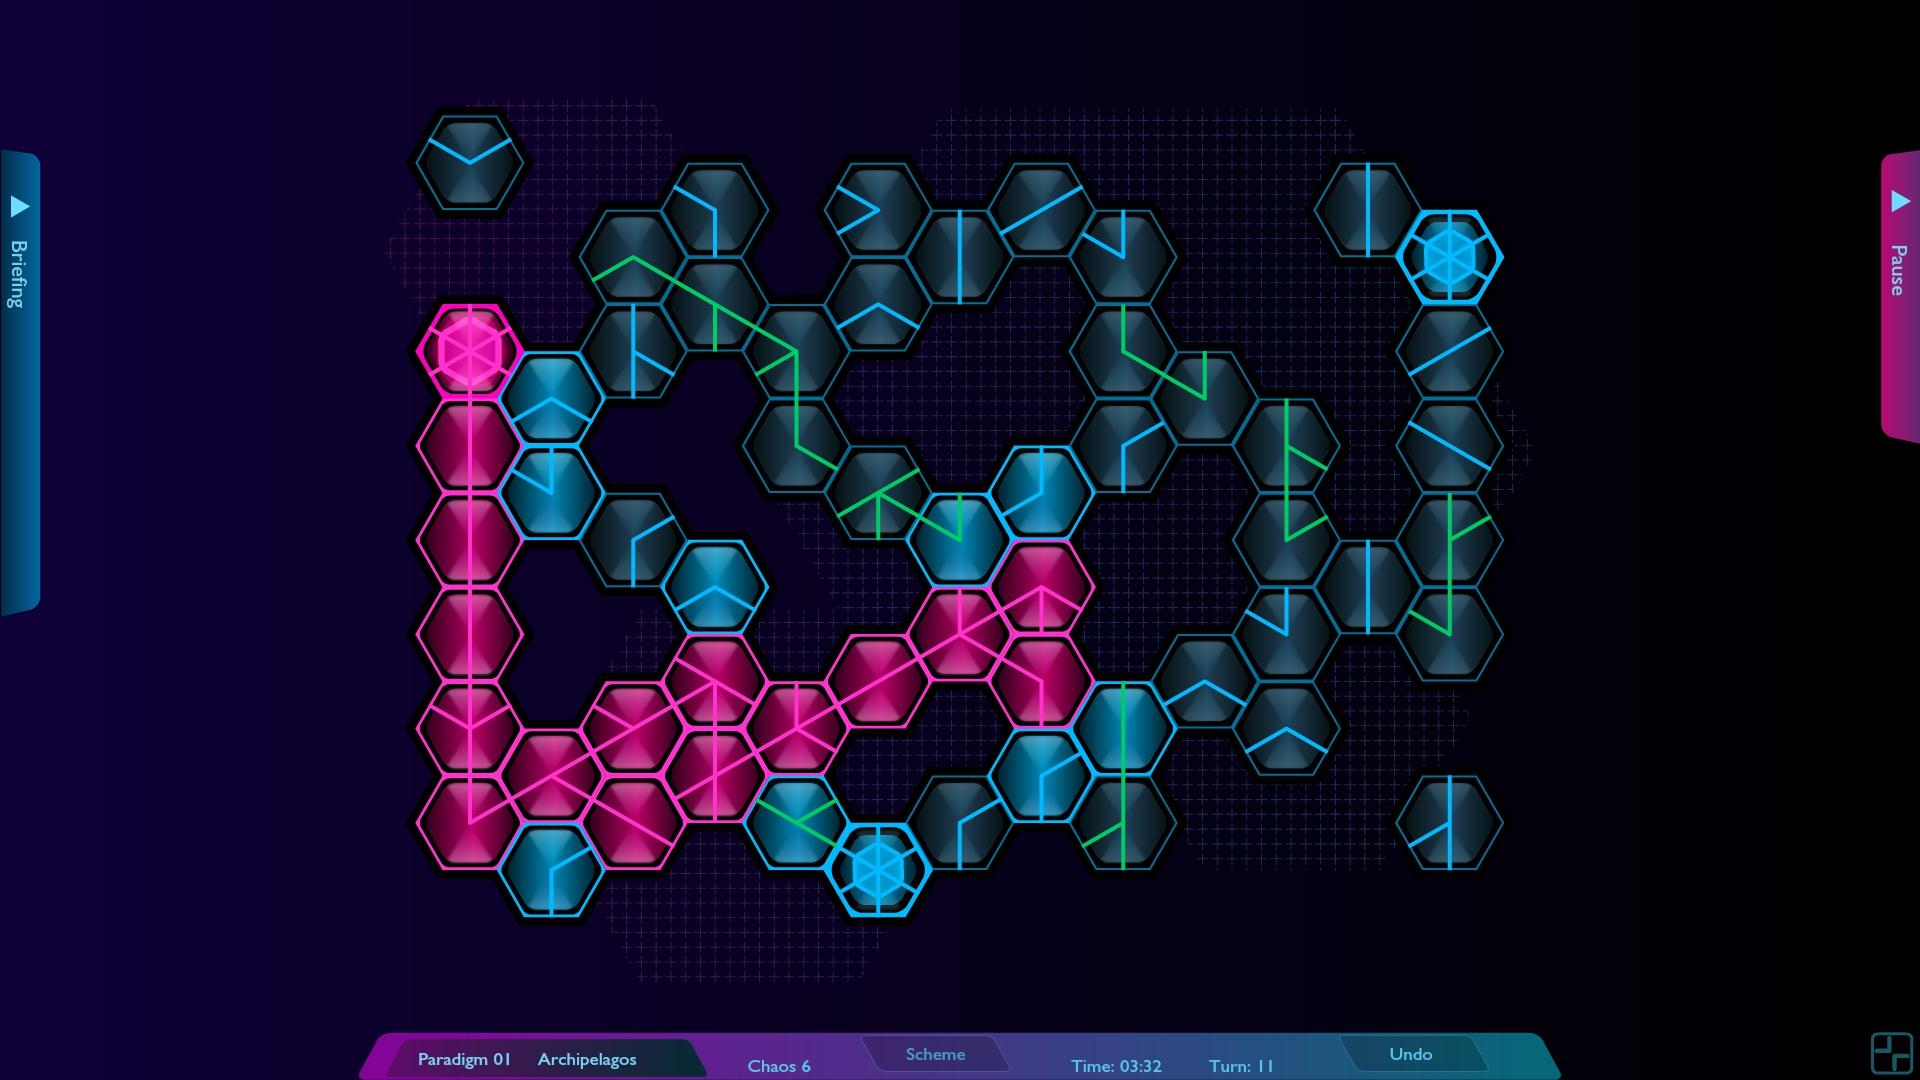 Screenshot №8 from game Hexoscope